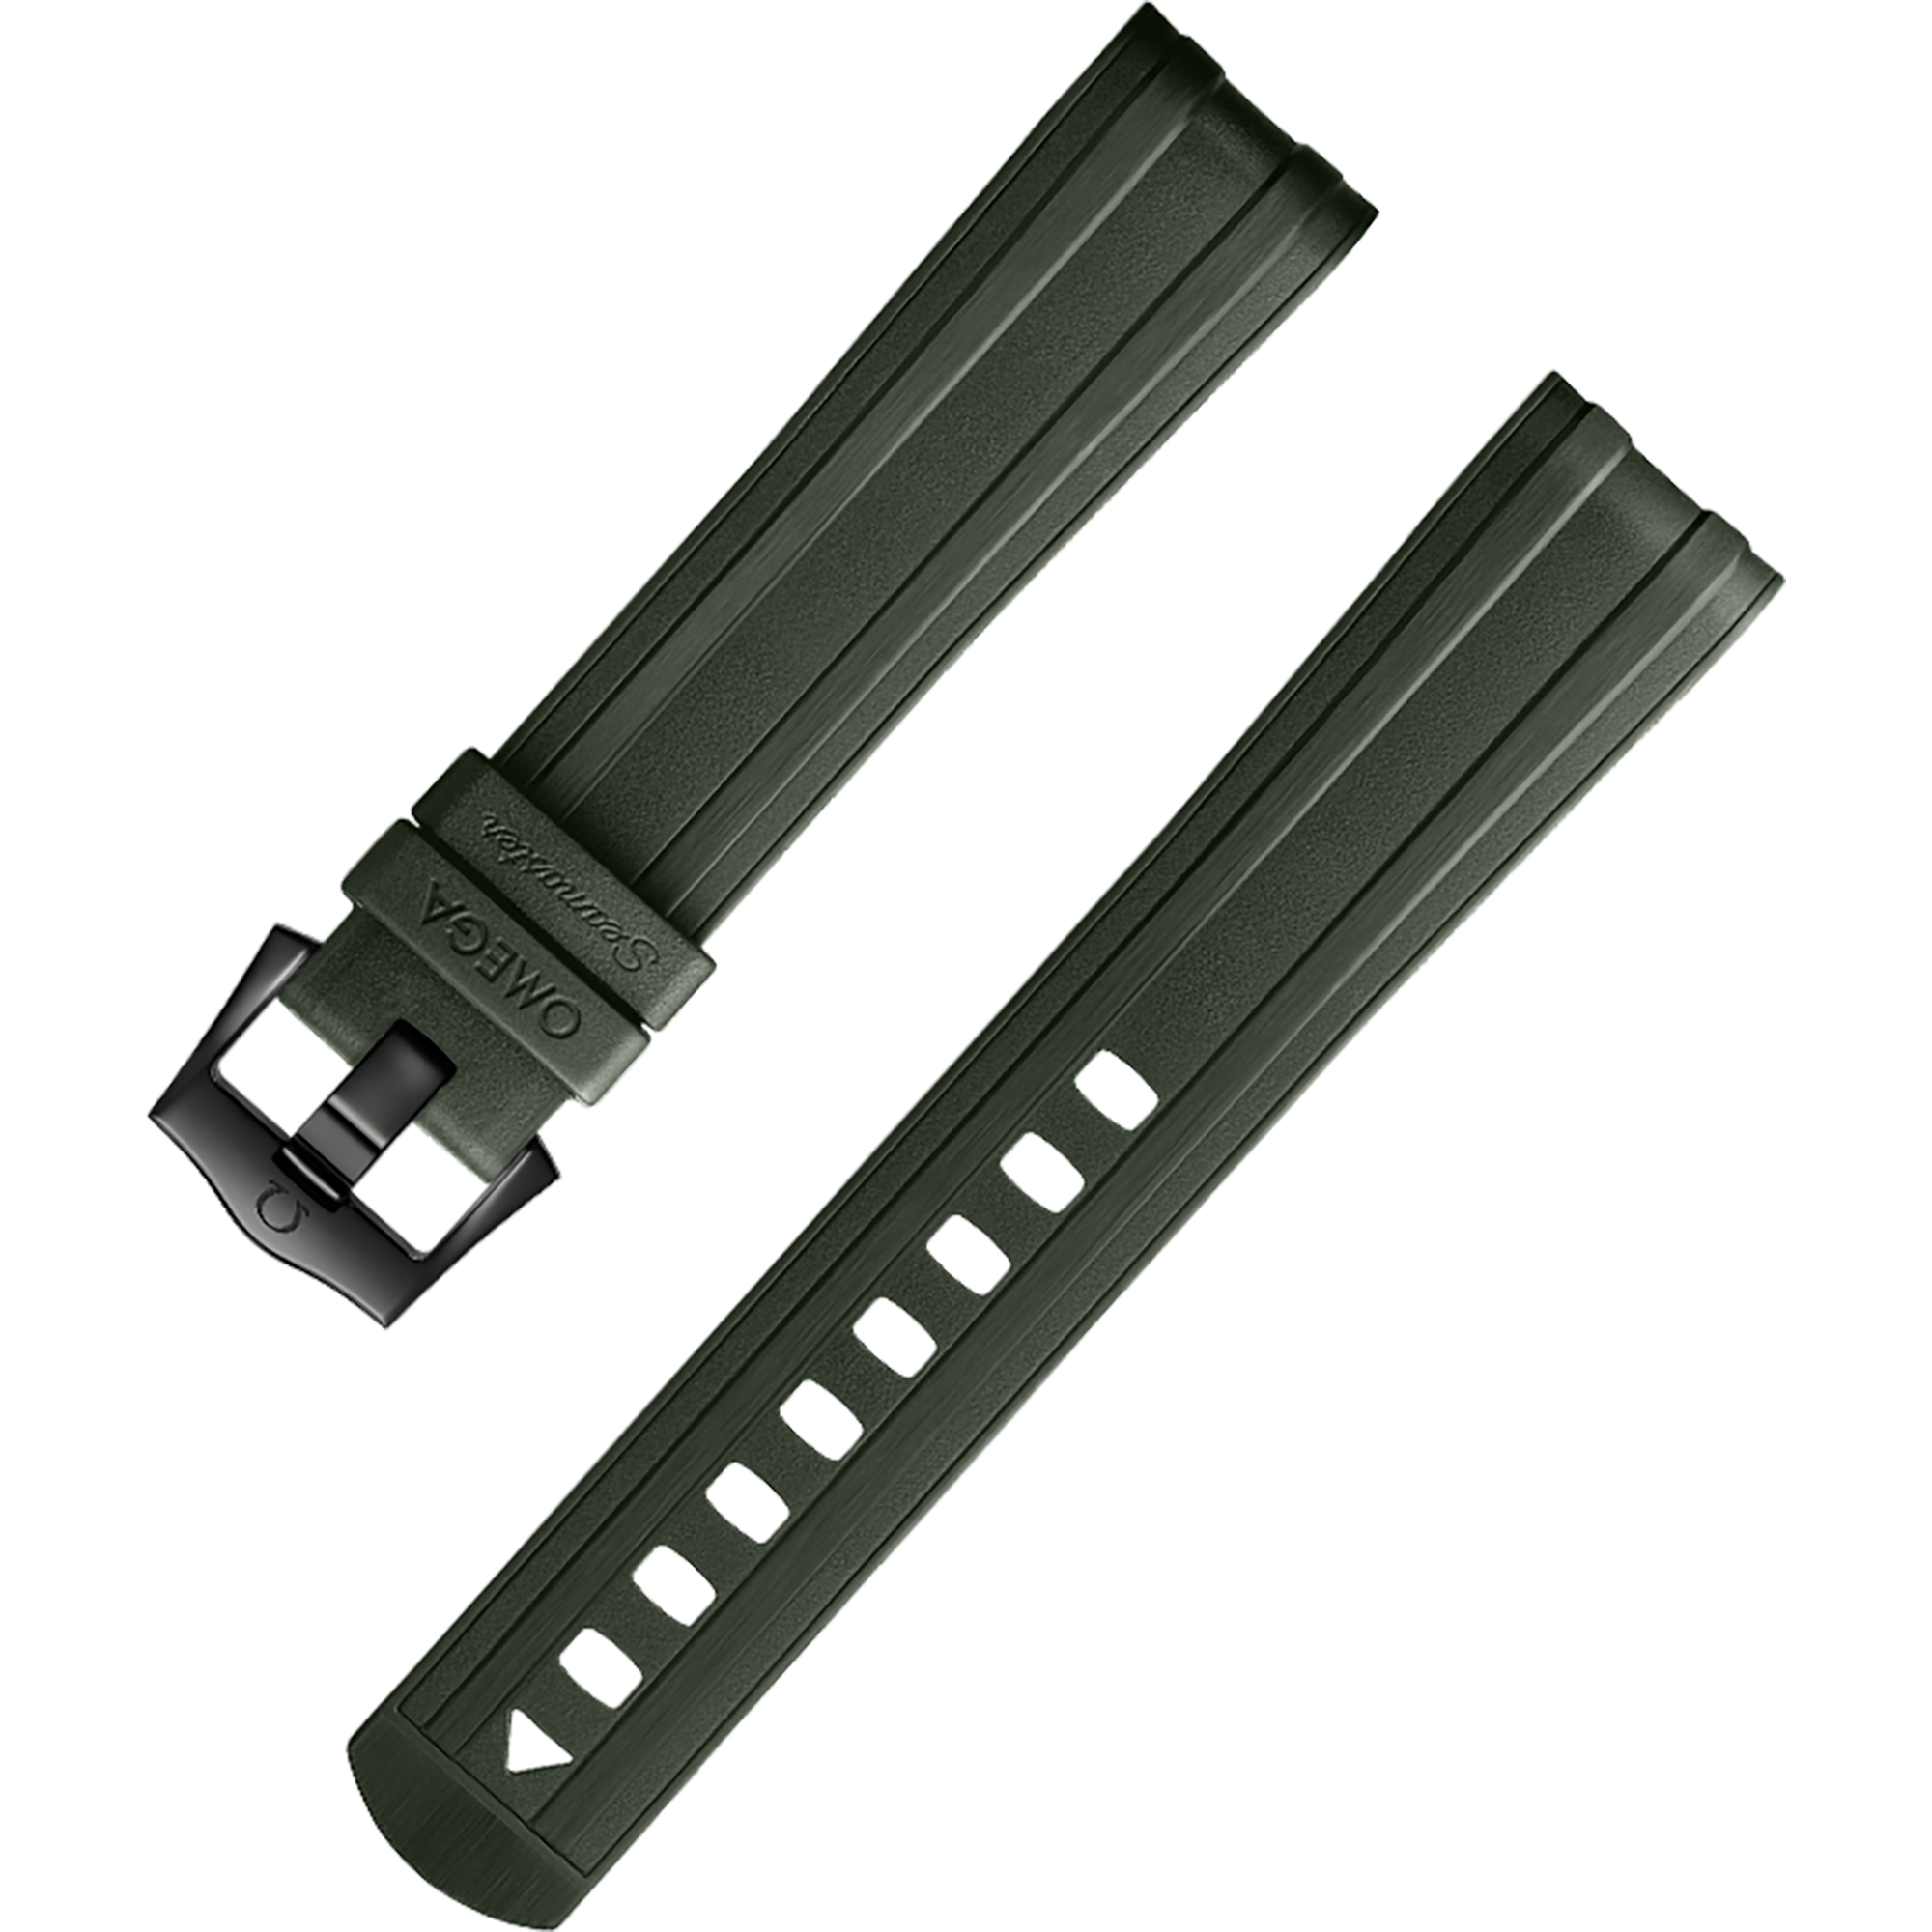 两件式表带 - 绿色橡胶表带，搭配针扣，适用于海马系列300米潜水表 - 032Z017210